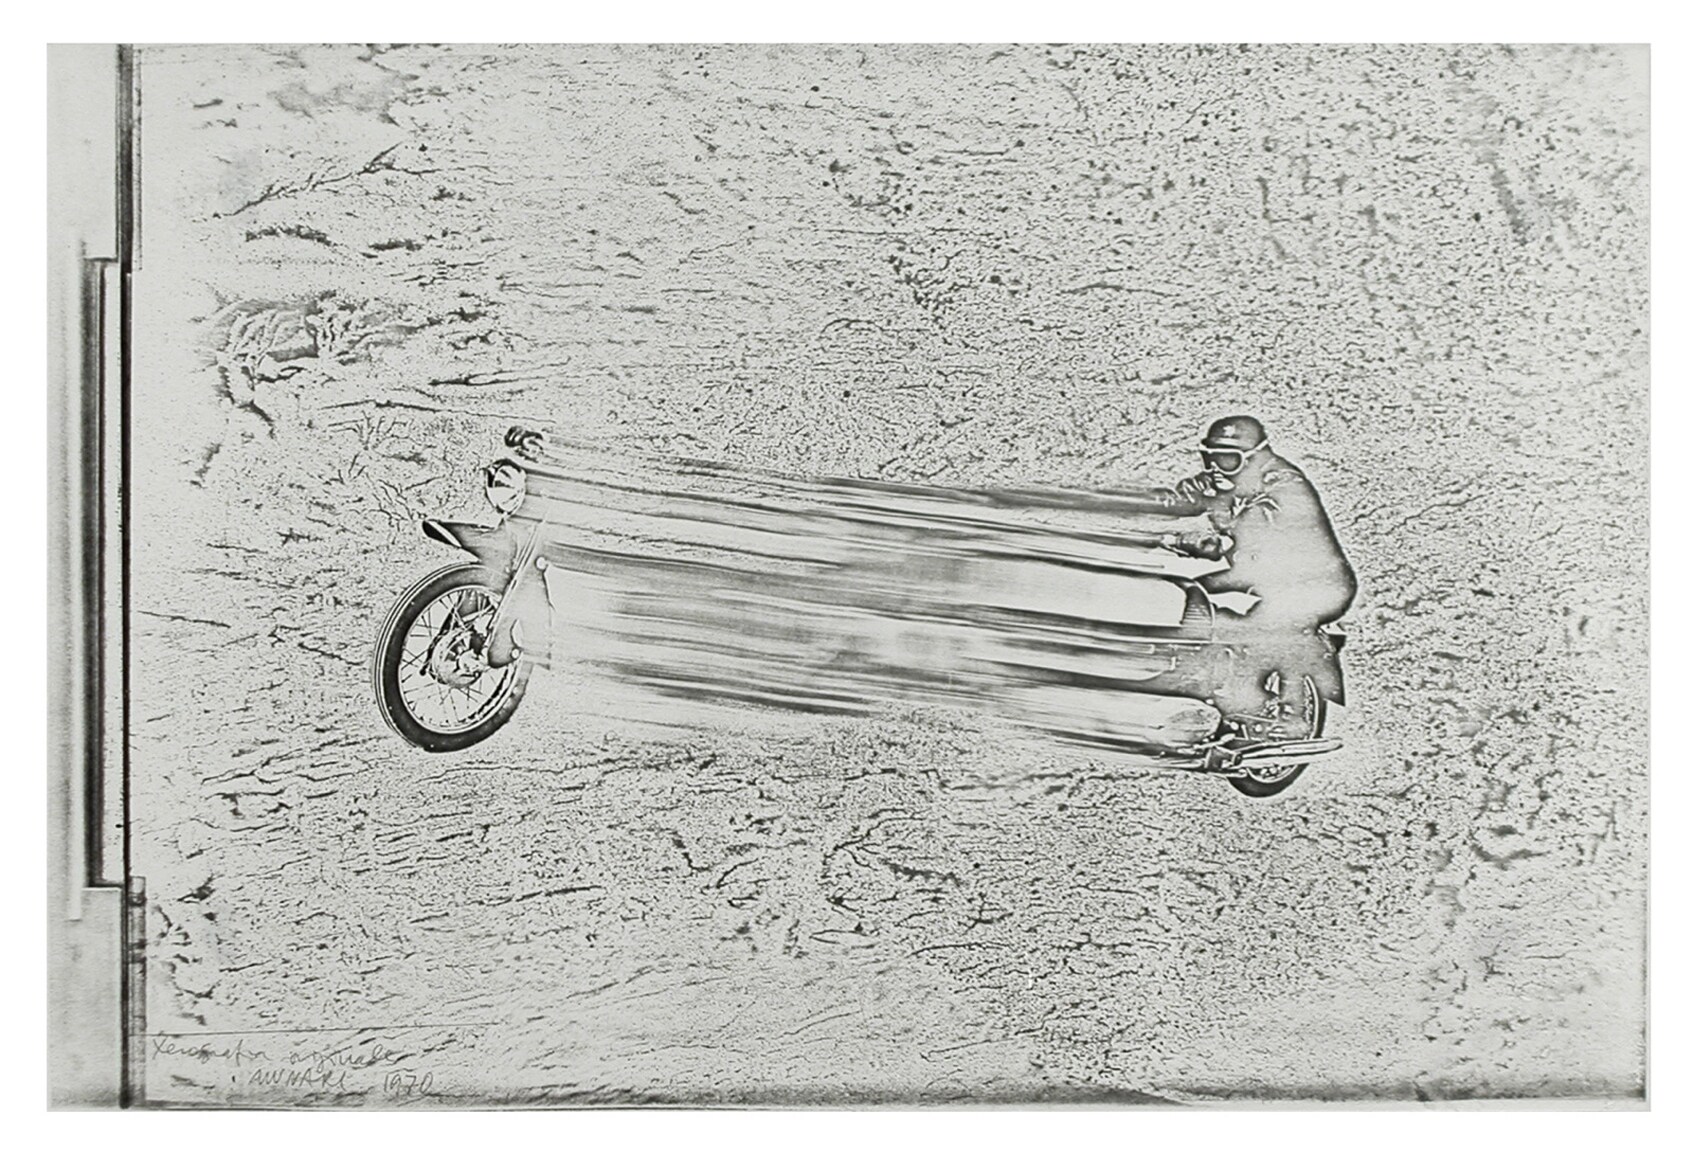 Bruno Munari, "Xerografia", 1970. Intervento originale su fotocopia, da fotografia, 25,3 x 38 cm. Donazione dell'Archivio Mirella Bentivoglio.